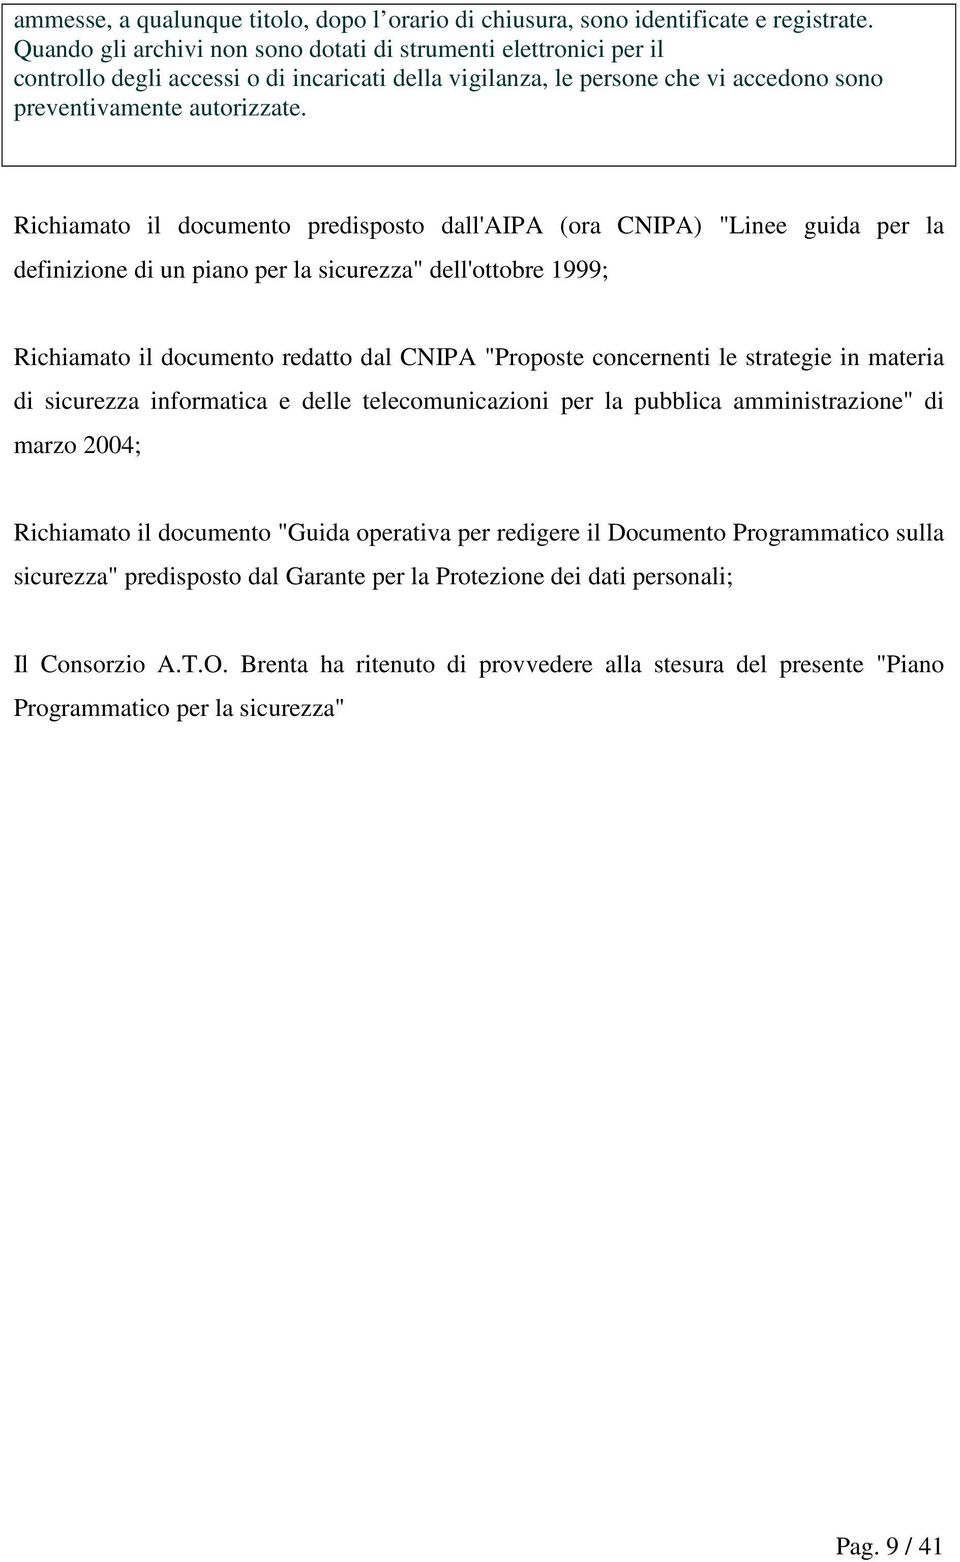 Richiamato il documento predisposto dall'aipa (ora CNIPA) "Linee guida per la definizione di un piano per la sicurezza" dell'ottobre 1999; Richiamato il documento redatto dal CNIPA "Proposte